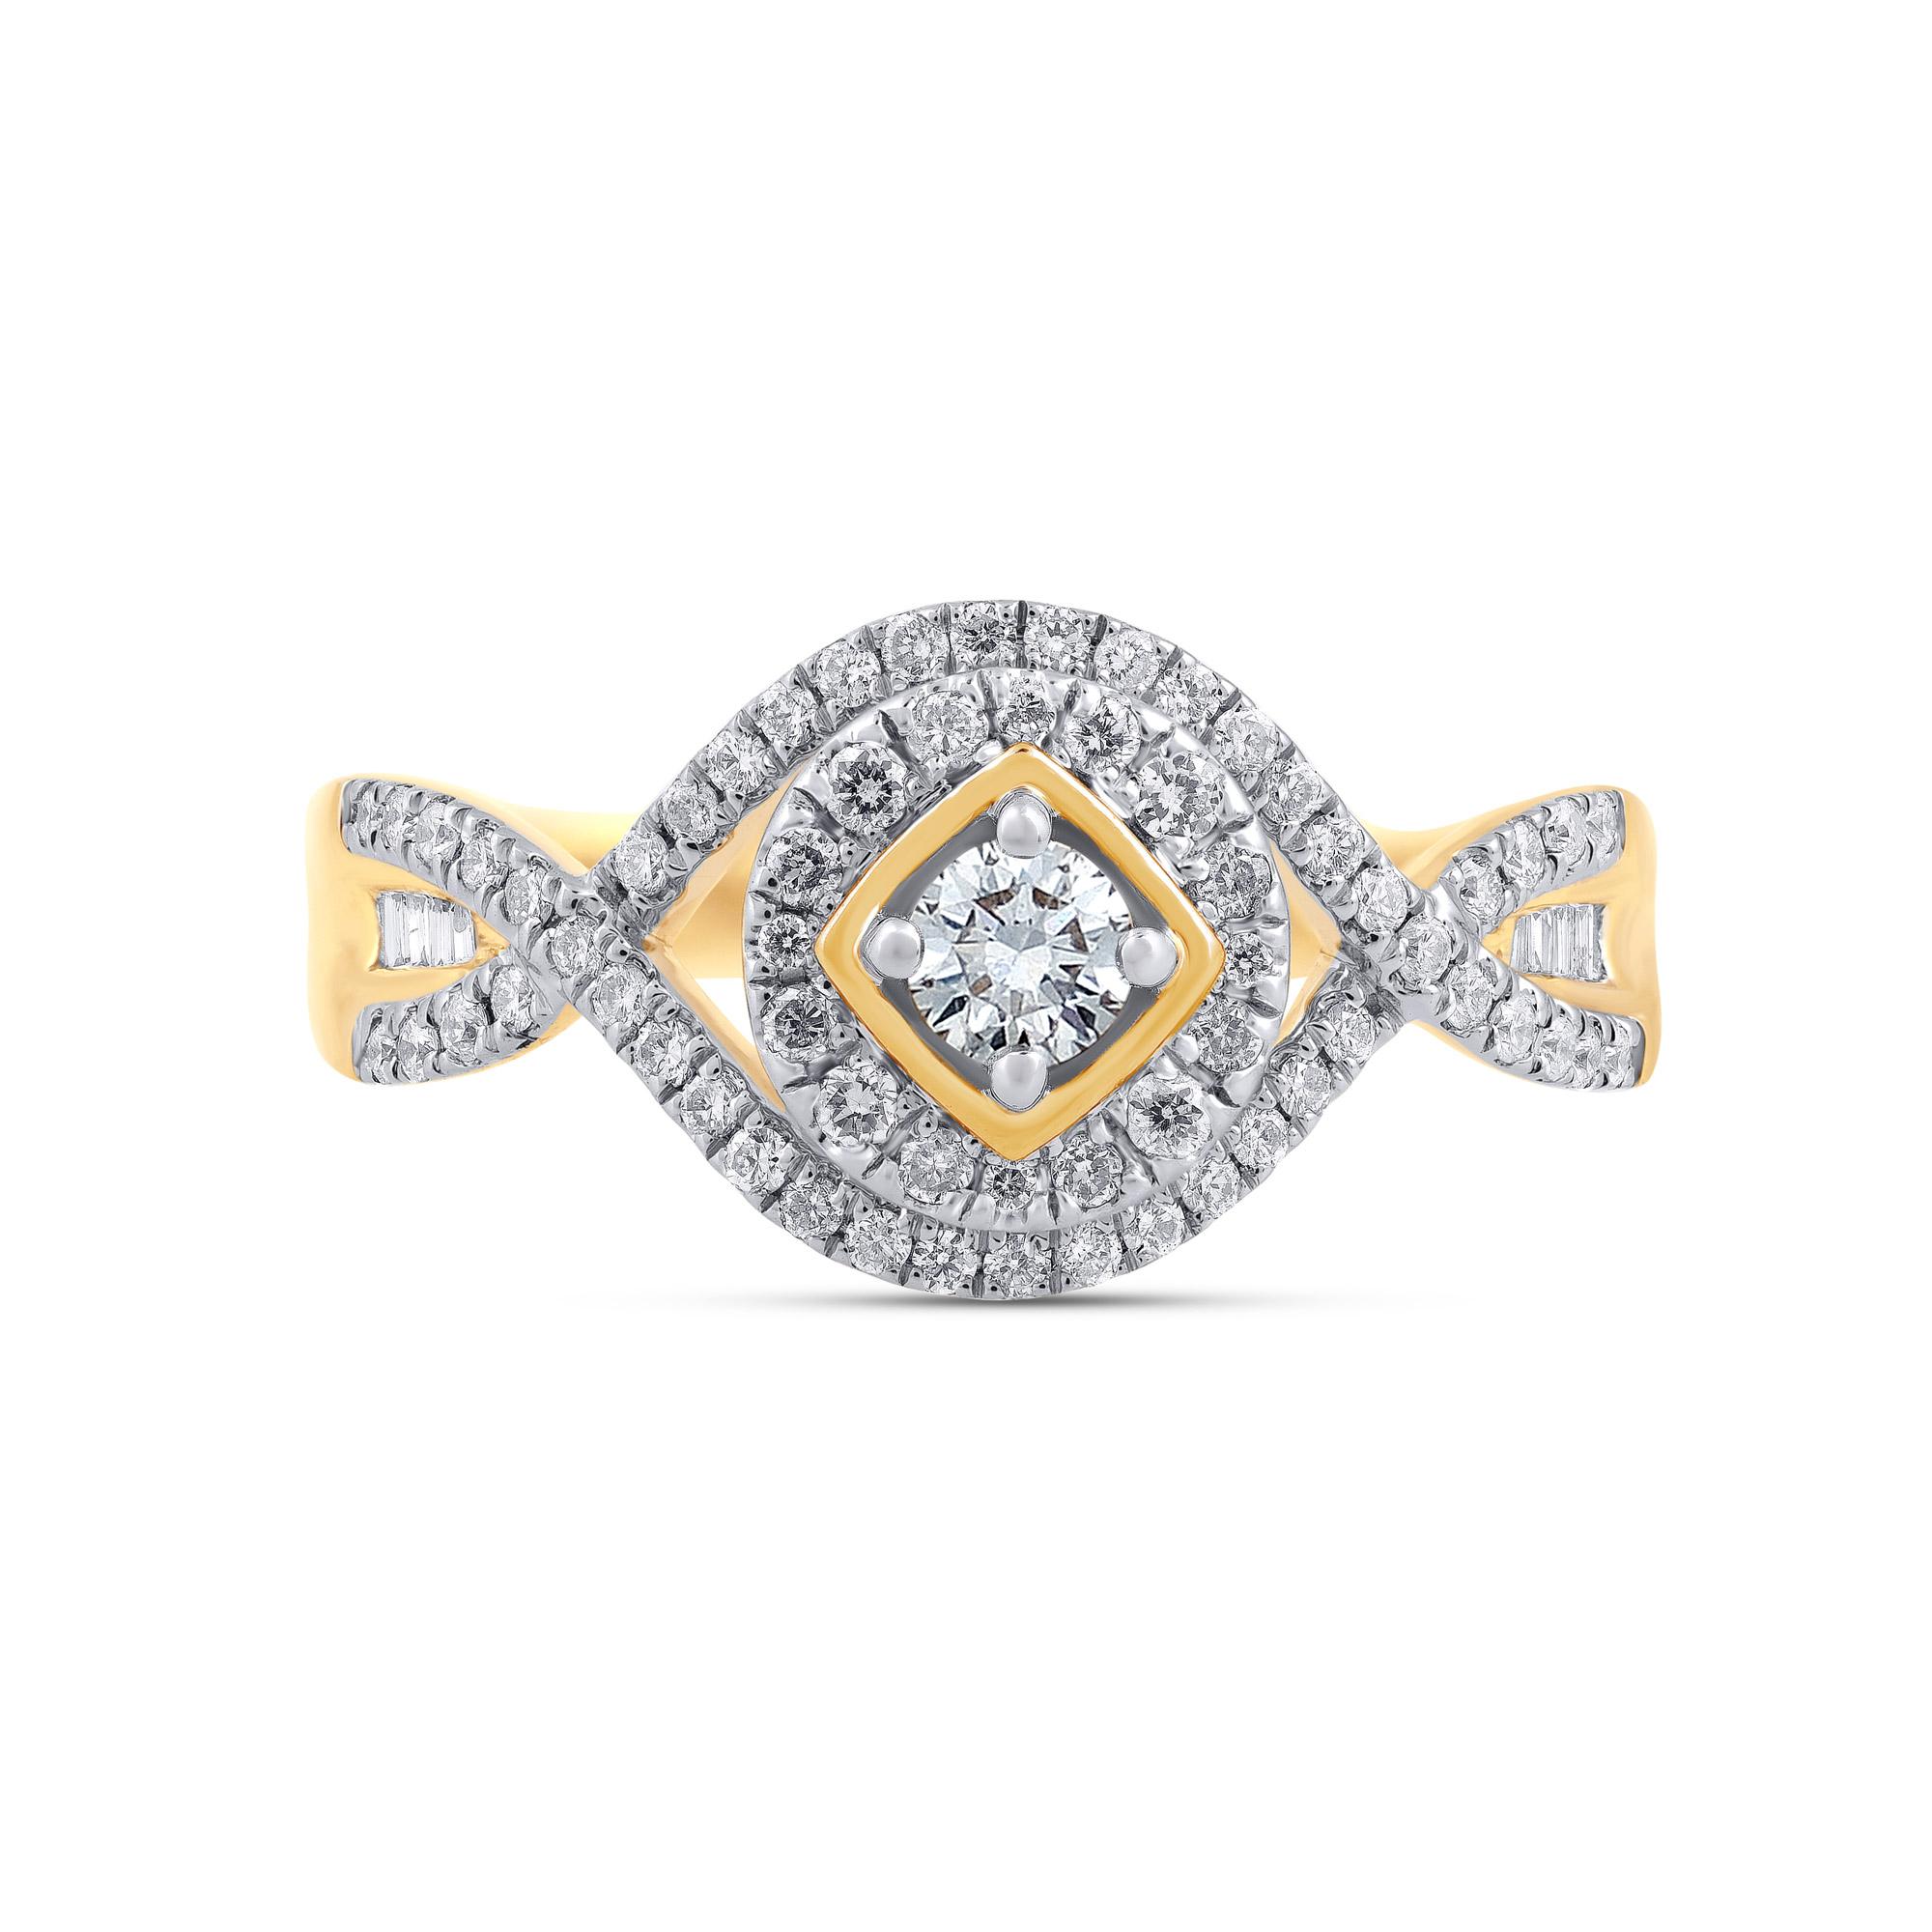 Donnez une touche de glamour à votre collection de bijoux fins avec cette bague de fiançailles en diamant. Fabriqué en or jaune 14KT. Cette bague à tige fendue est ornée de 71 diamants taille unique, diamants ronds taille brillant et diamants